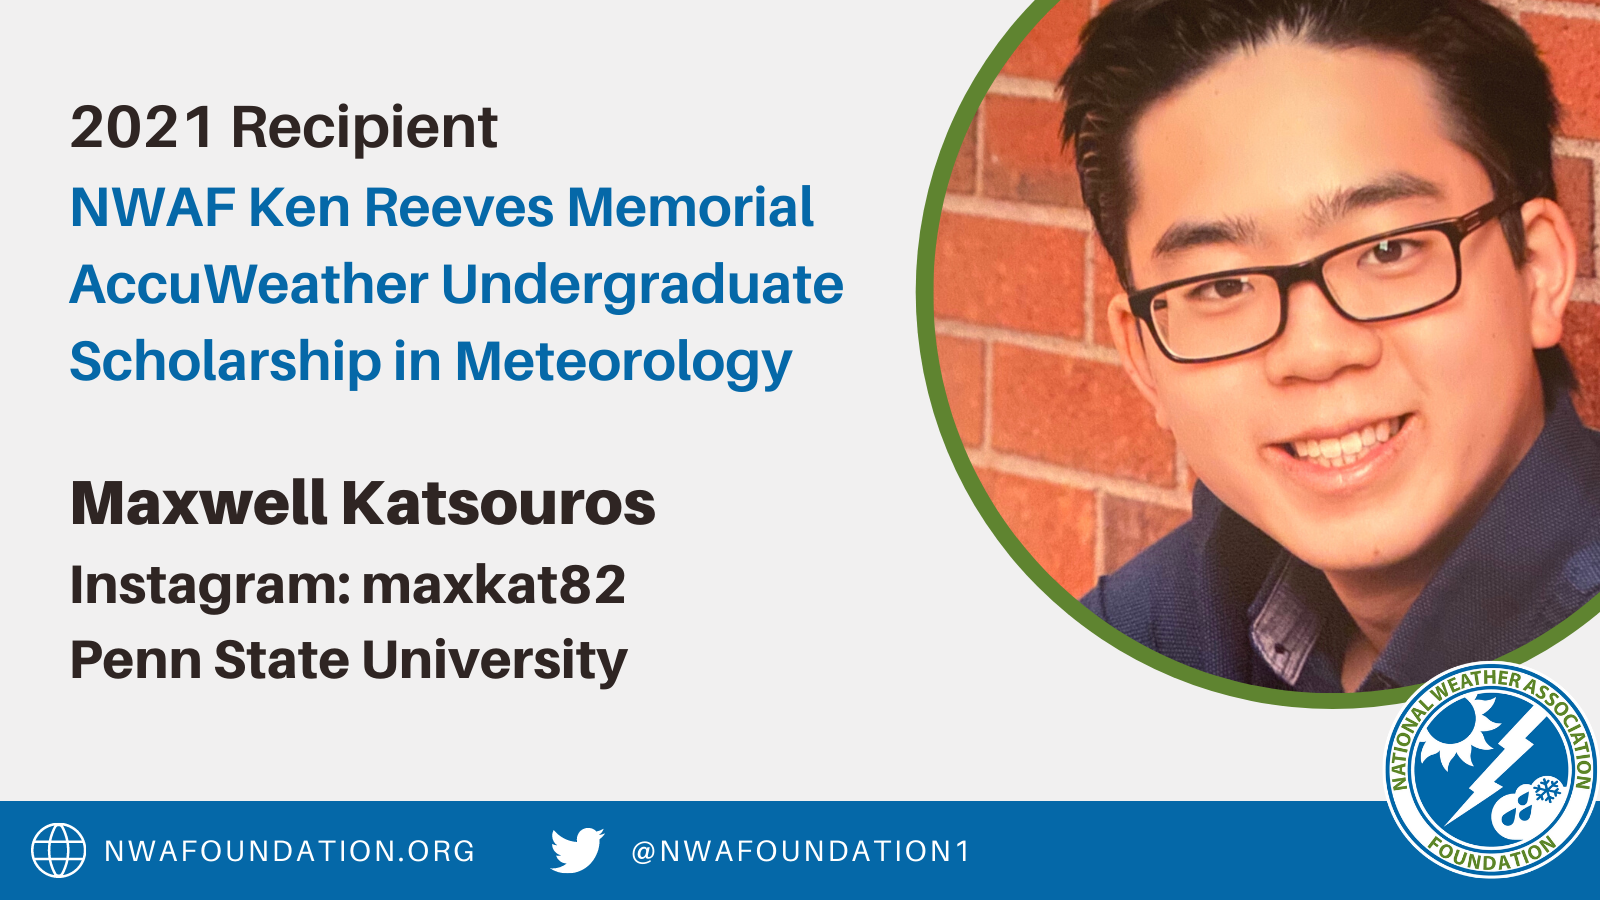 Maxwell Katsouros NWAF Ken Reeves Memorial AccuWeather Undergraduate Scholarship in Meteorology Winner